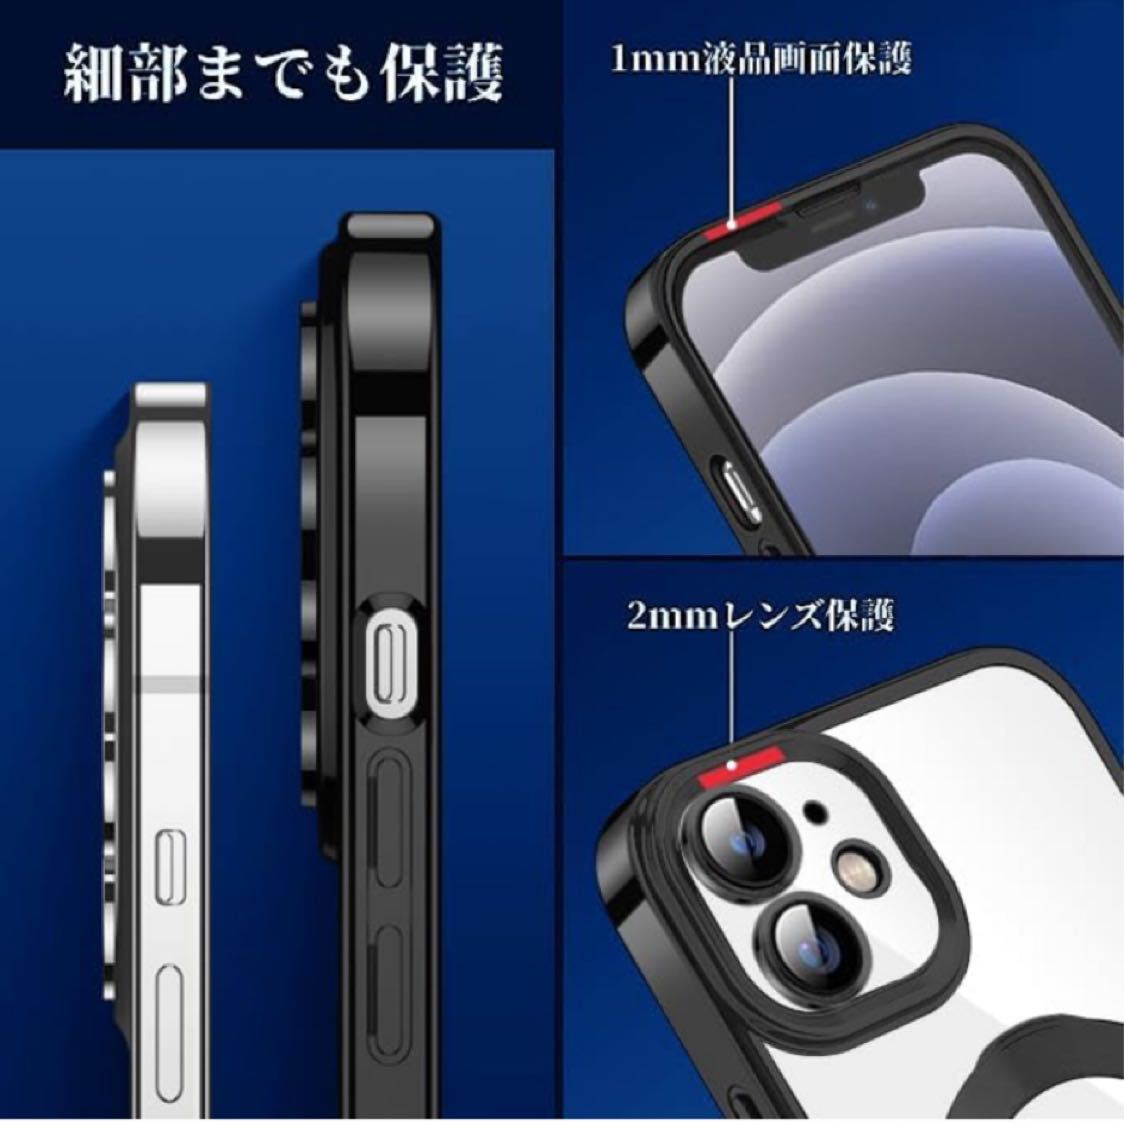 iPhone 12 ケース MagSafe対応 リング付き クリア iPhone12 カバー 縦横両対応 車載ホルダー対応 多機能(ブラック)